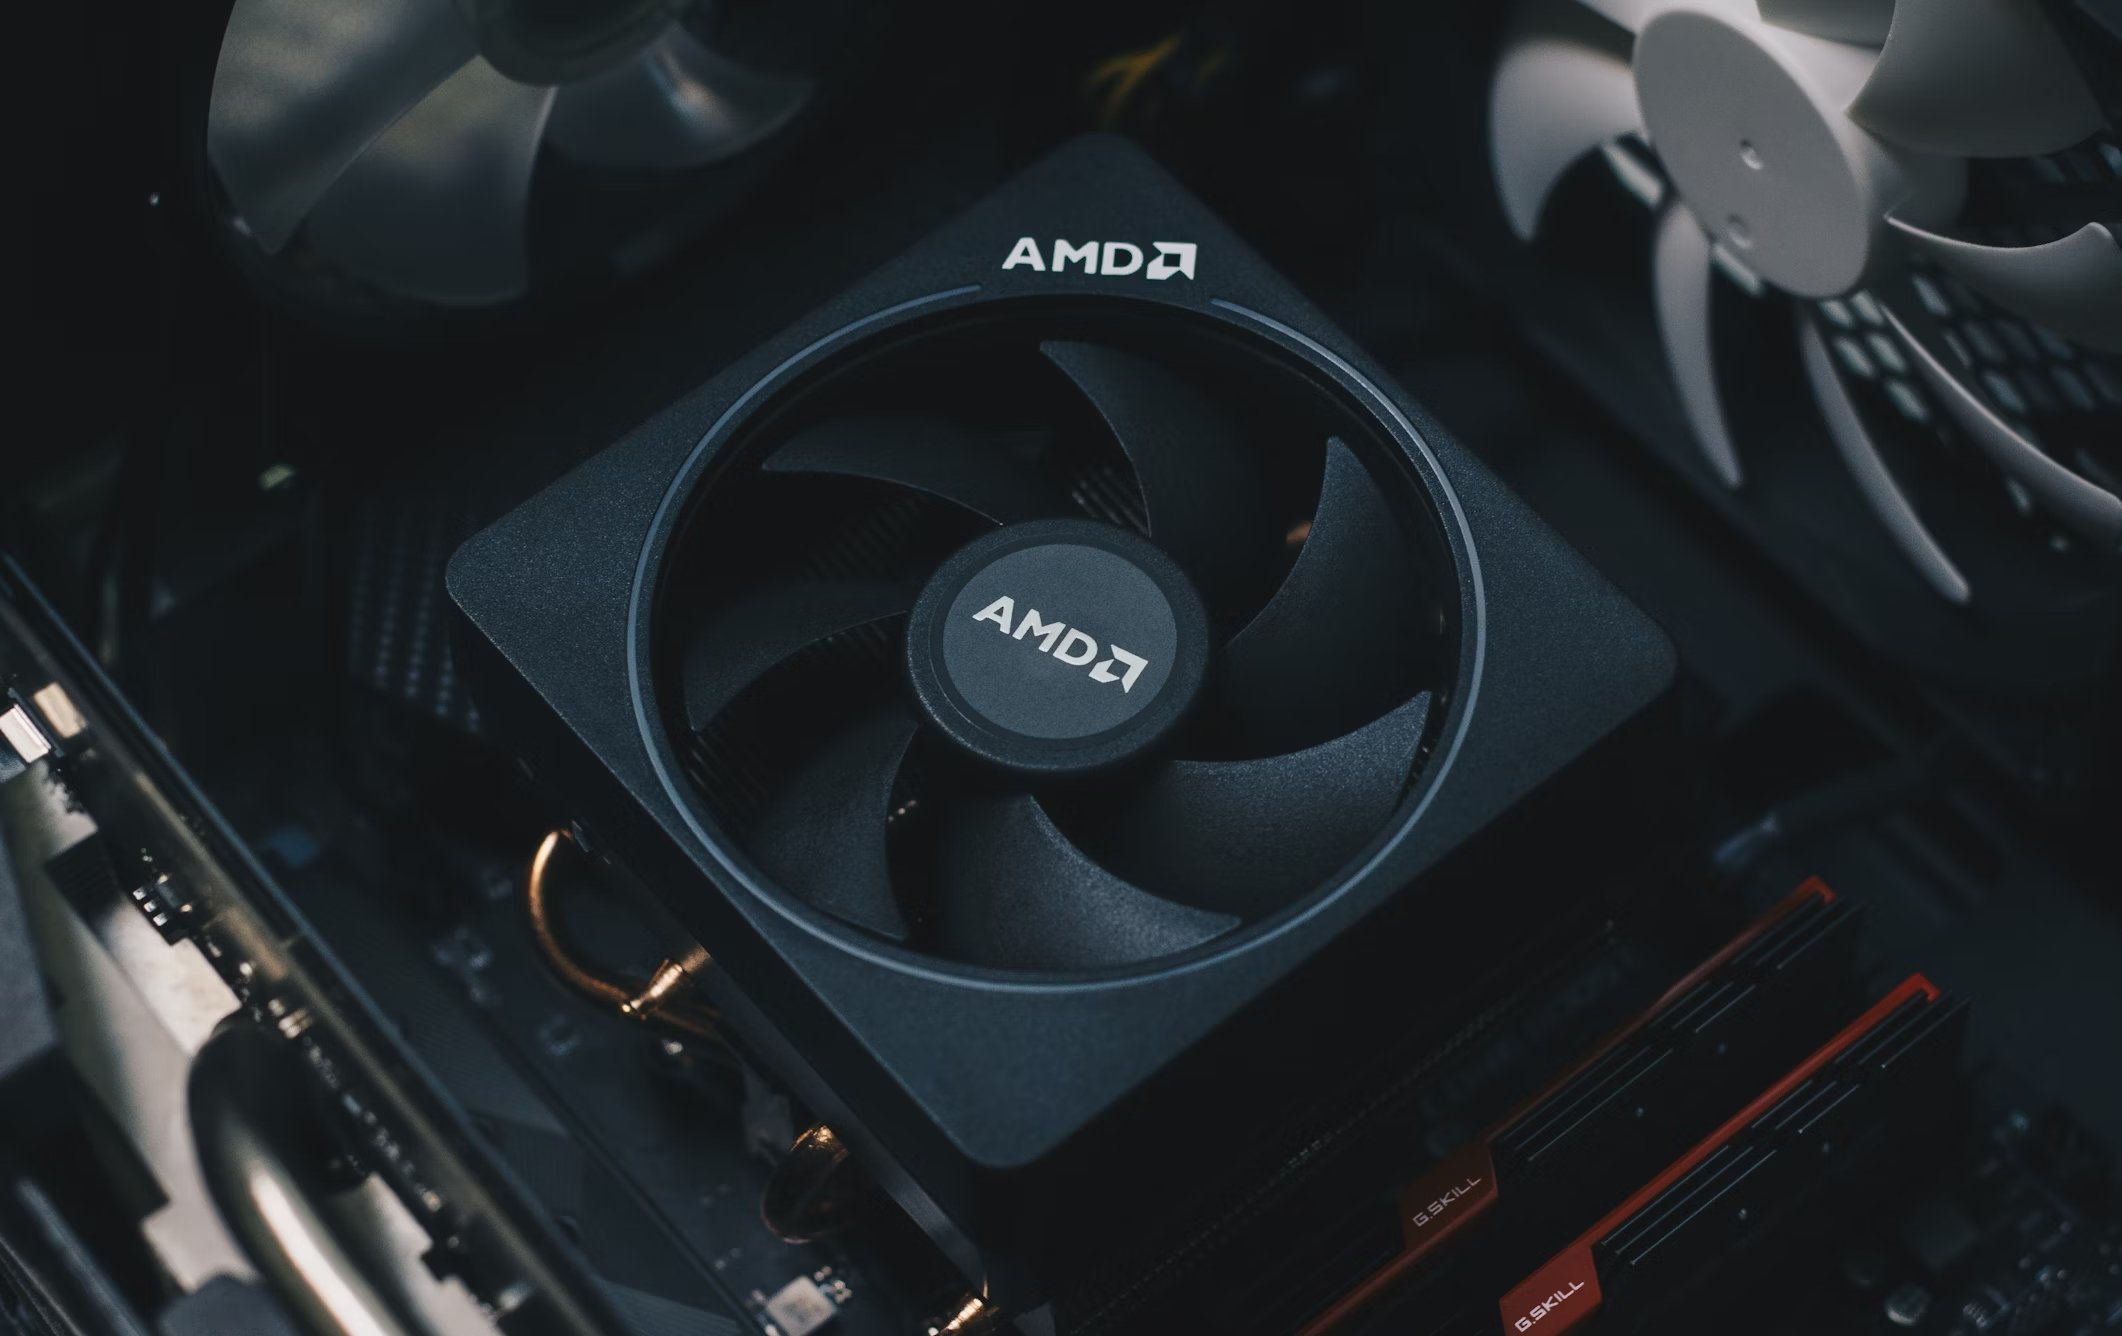 AMD processador e cooler